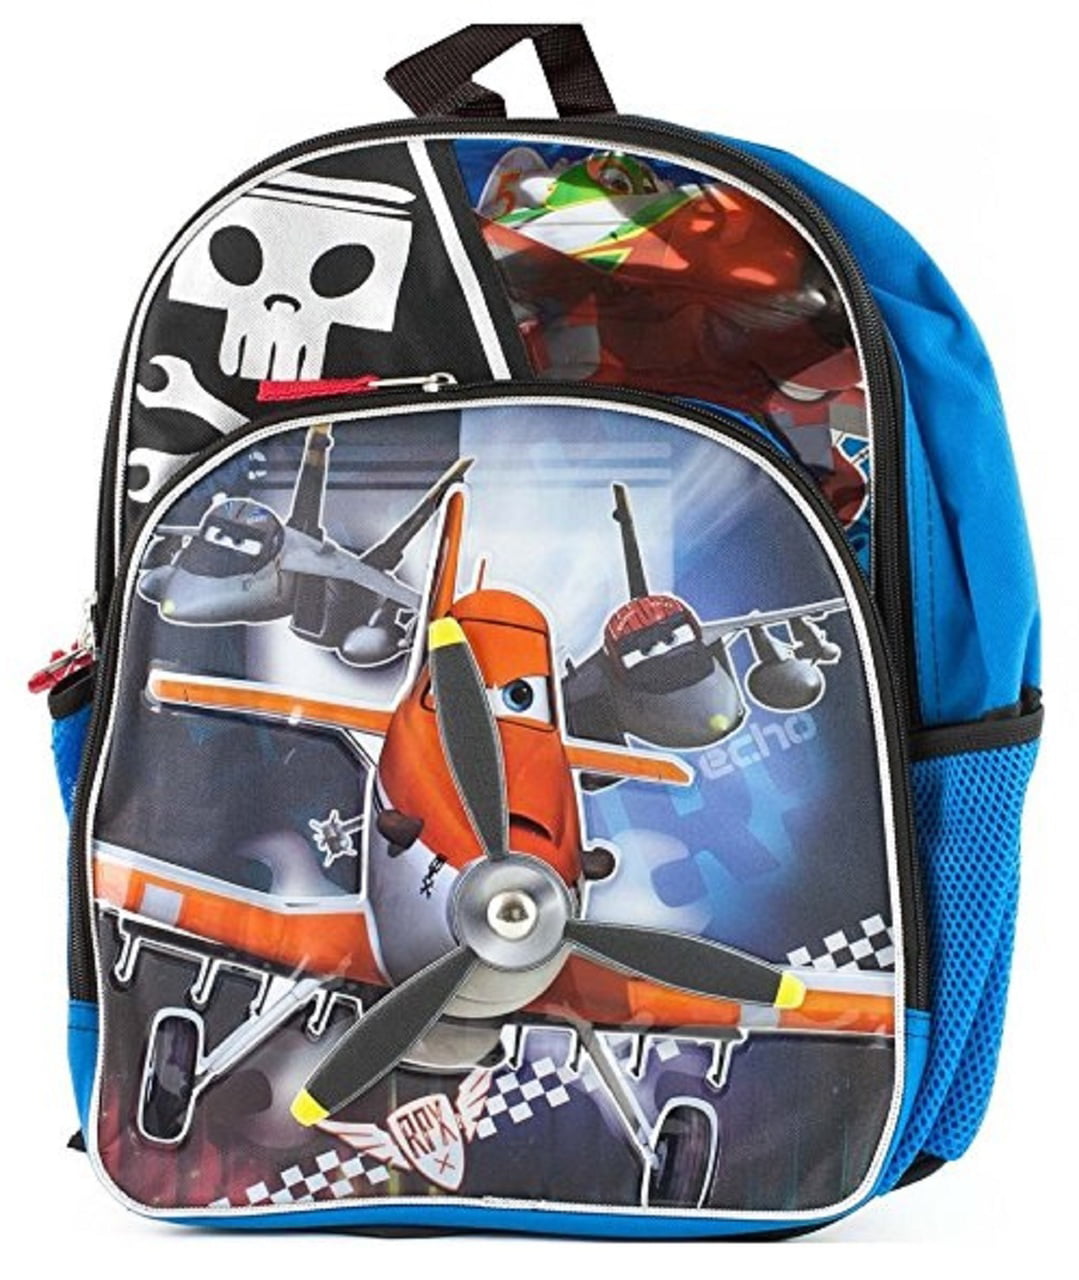 Disney Planes 'Pull String' Mesh Bag Brand New Gift 